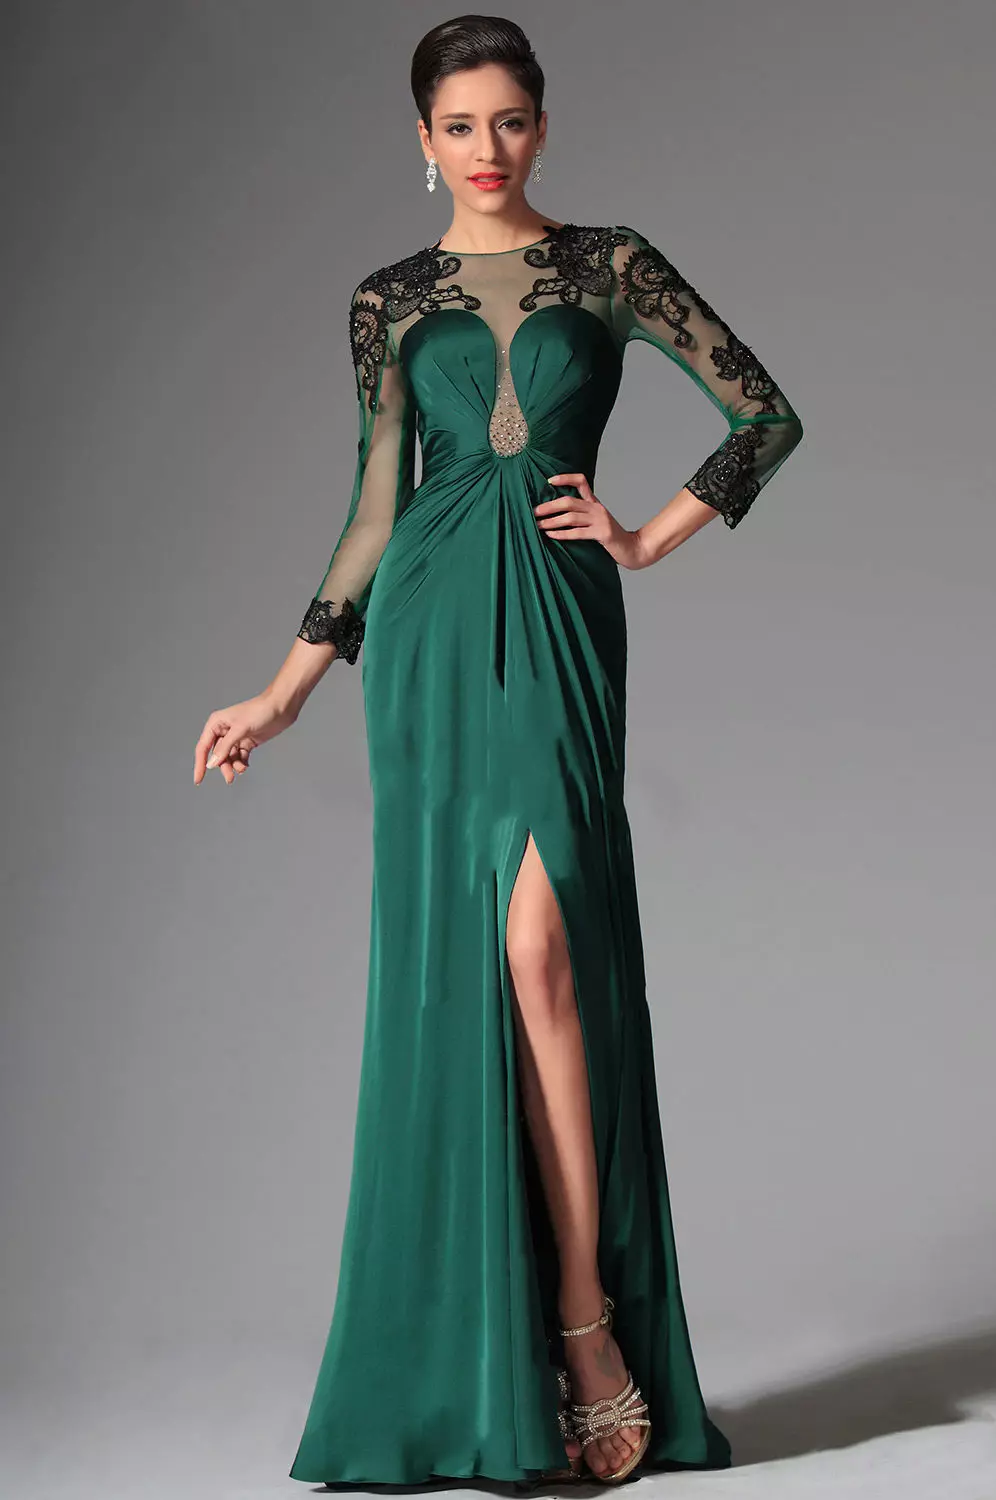 Kväll grön klänning med svart spets